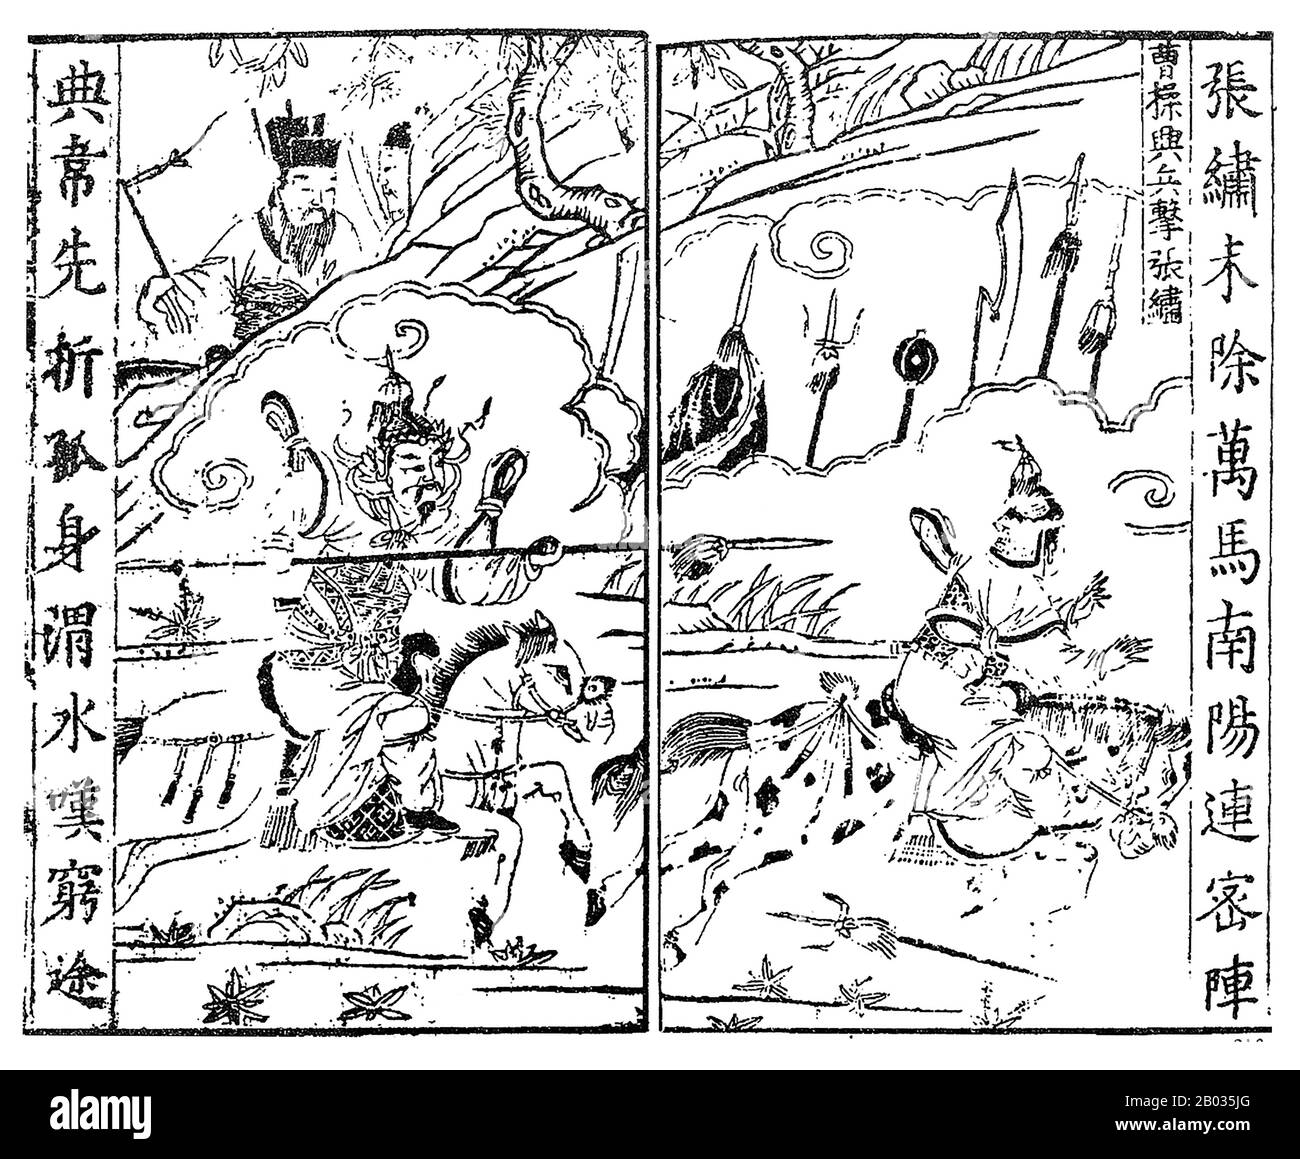 Cao Cao (155-15. März 220 CE), Höflichkeitsname Mengde, war einer der überstürzten wichtigen Warlords während der Zeit der Baum-Königreiche. Cao, der vorletzte Kanzler der östlichen Han-Dynastie, stieg in den letzten Jahren der Dynastie zur Großmacht auf. Als die östliche Han-Dynastie fiel, konnte Cao Cao die größten und wohlhabendsten Städte der zentralen Ebenen Nordchinas sichern und unter seiner Herrschaft vereinen. Während der Zeit Der Drei Reiche legte er den Grundstein für das, was zum Staat Cao Wei werden würde, das posthum mit dem Titel "Kaiser Wu von Wei" geehrt wurde. Obwohl er sehr su gewesen war Stockfoto